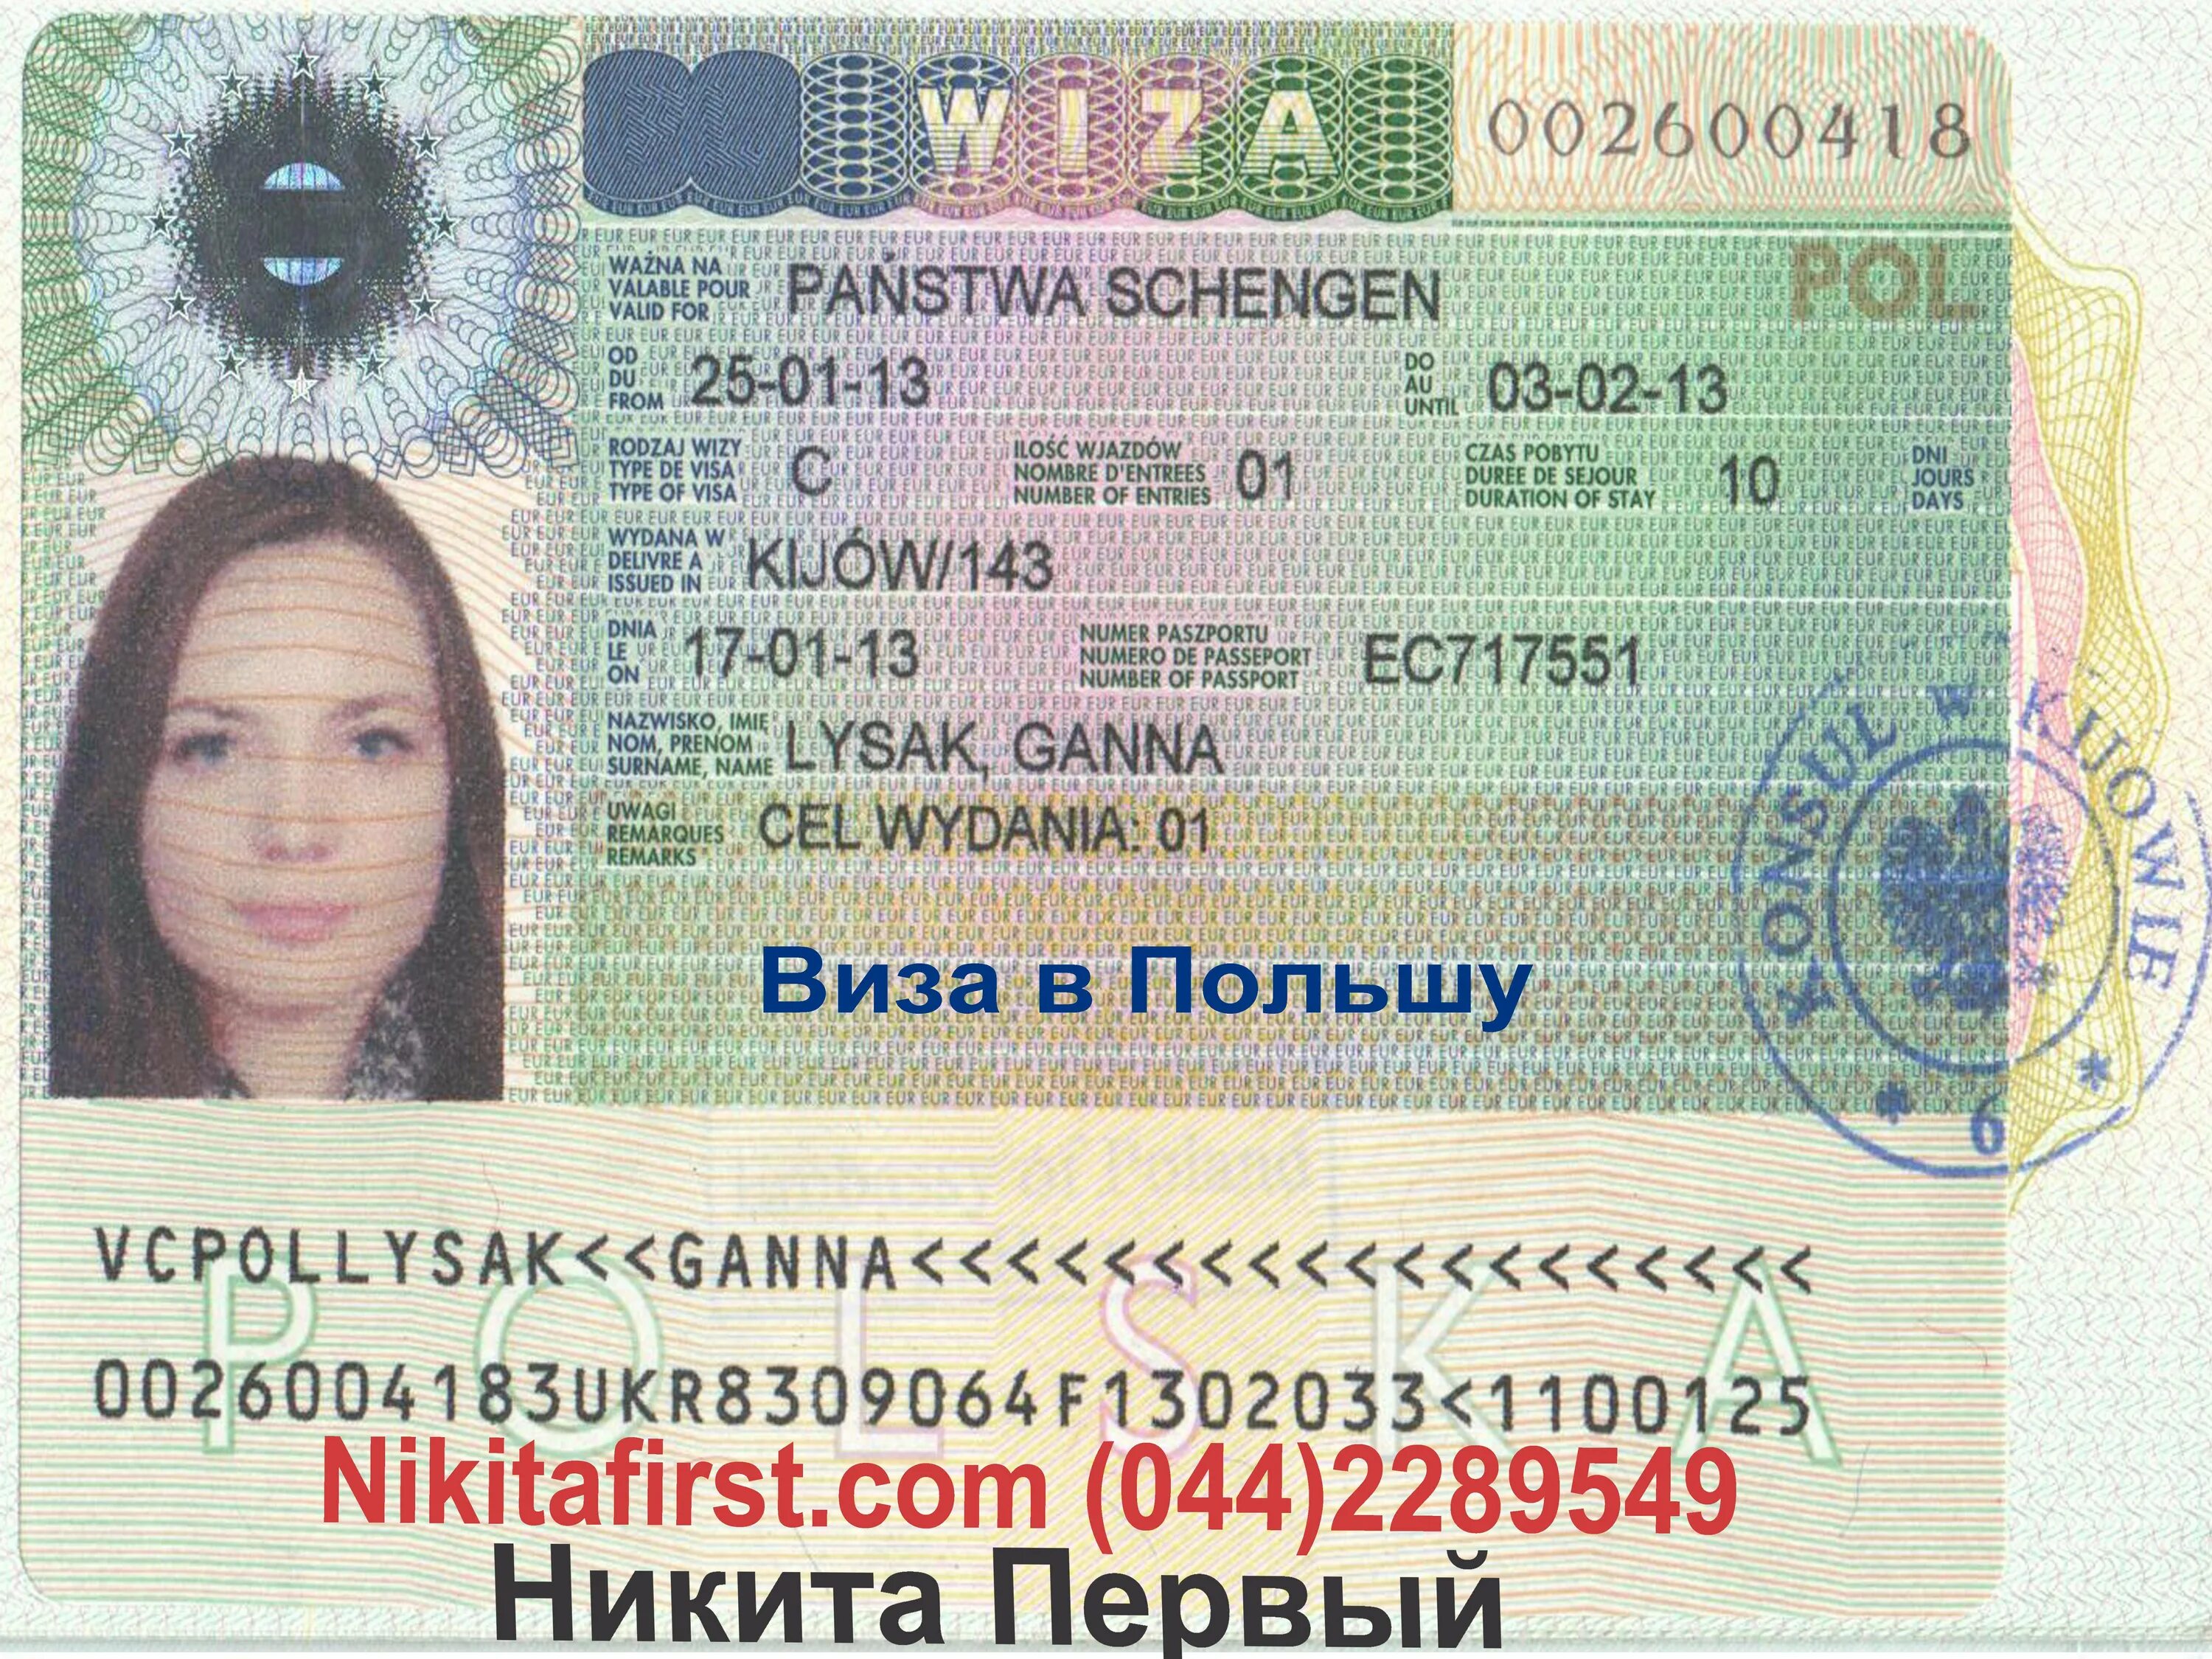 Виза в европейские страны. Польская рабочая виза. Польская шенгенская виза. Виза в Польшу. Шенген виза Польши.